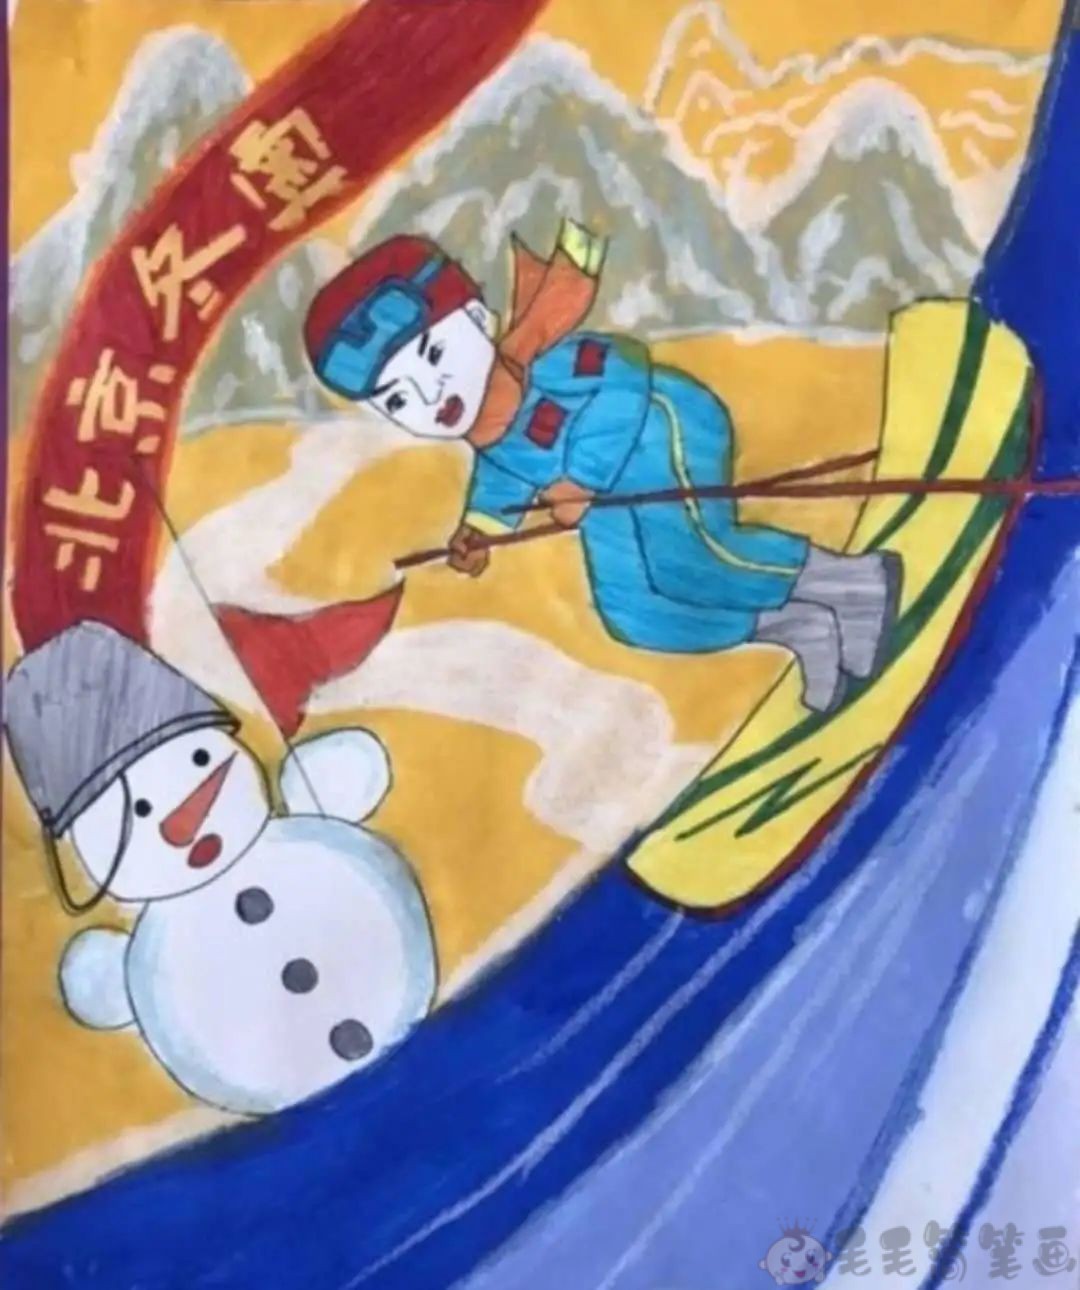 2022北京冬奥会儿童画,冬奥会少儿绘画 - 毛毛简笔画